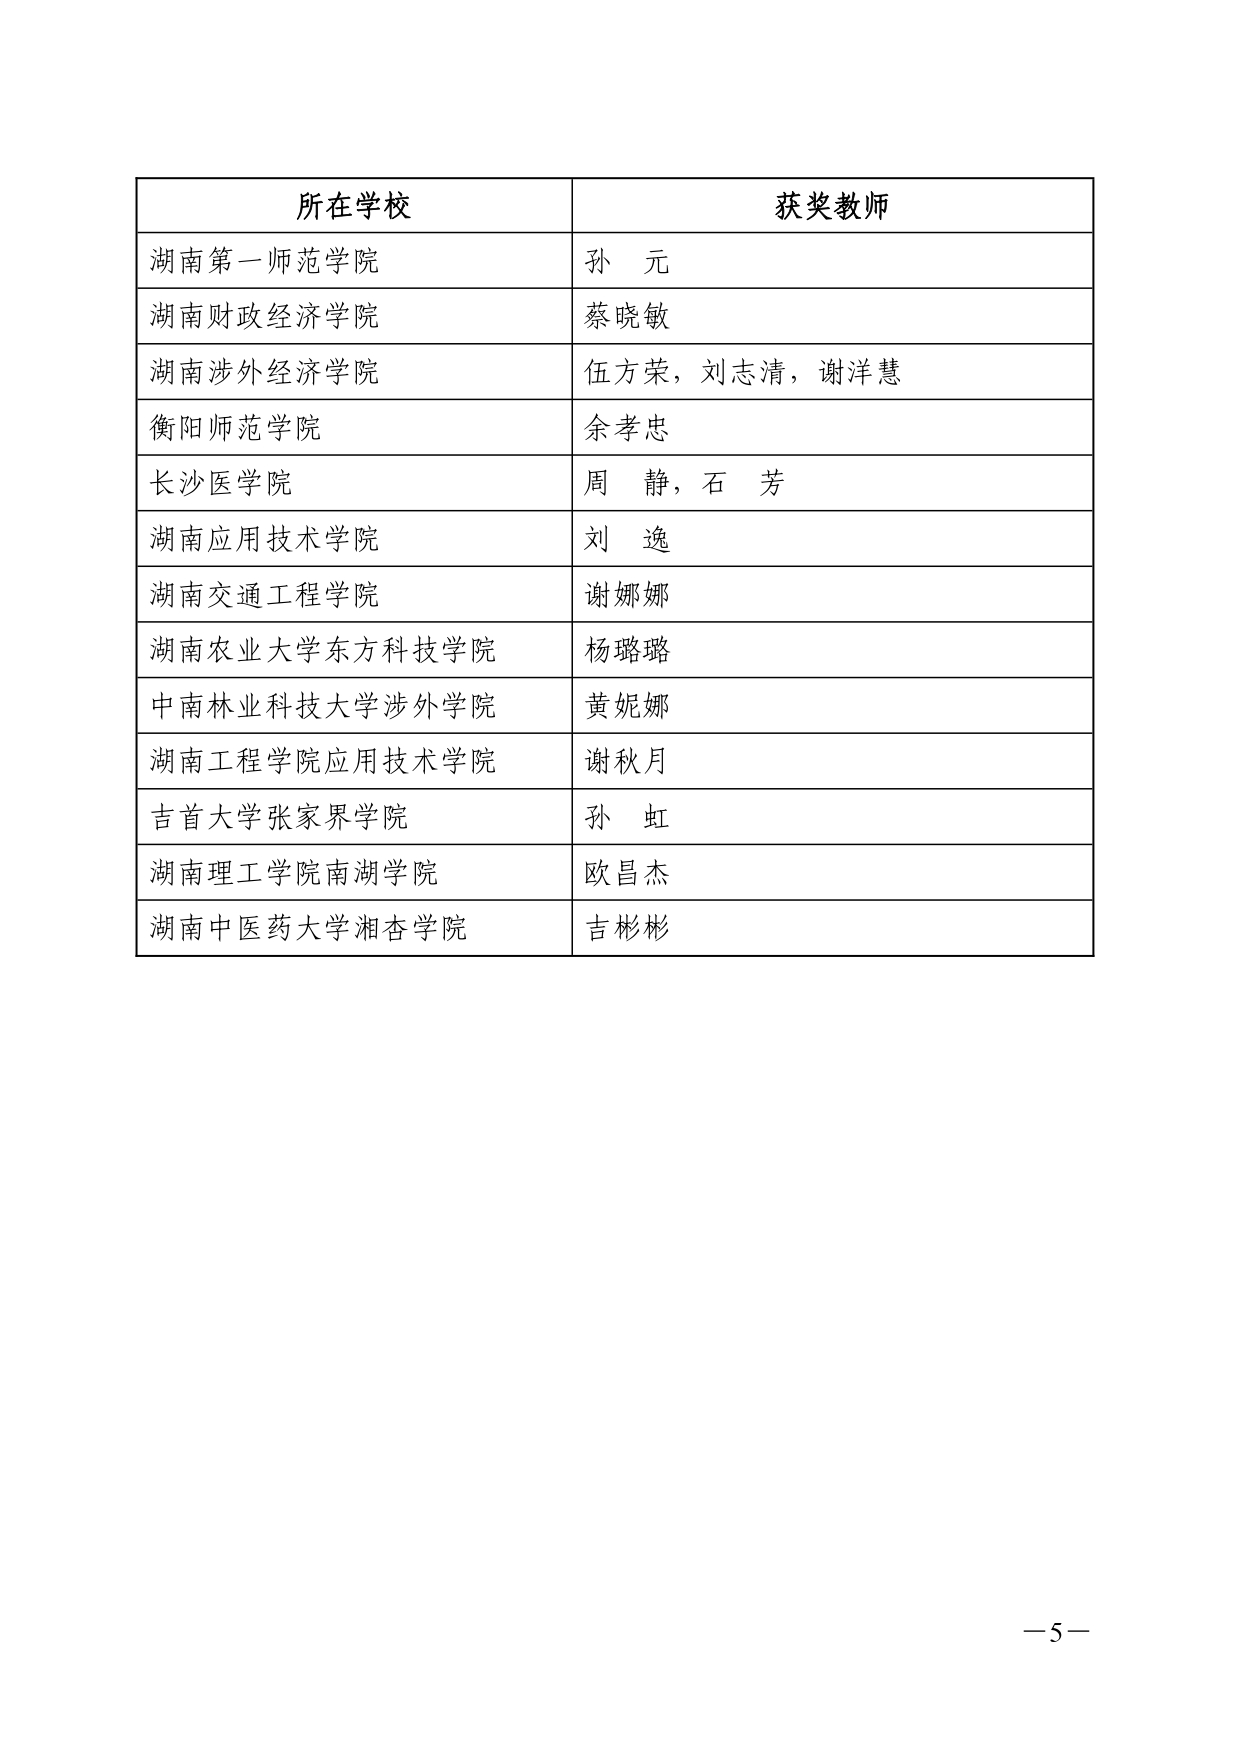 关于公布 2022 年湖南省普通高校教师信息化教学竞赛获奖结果的通知(湘教通〔2022〕353号)_page-0005.jpg